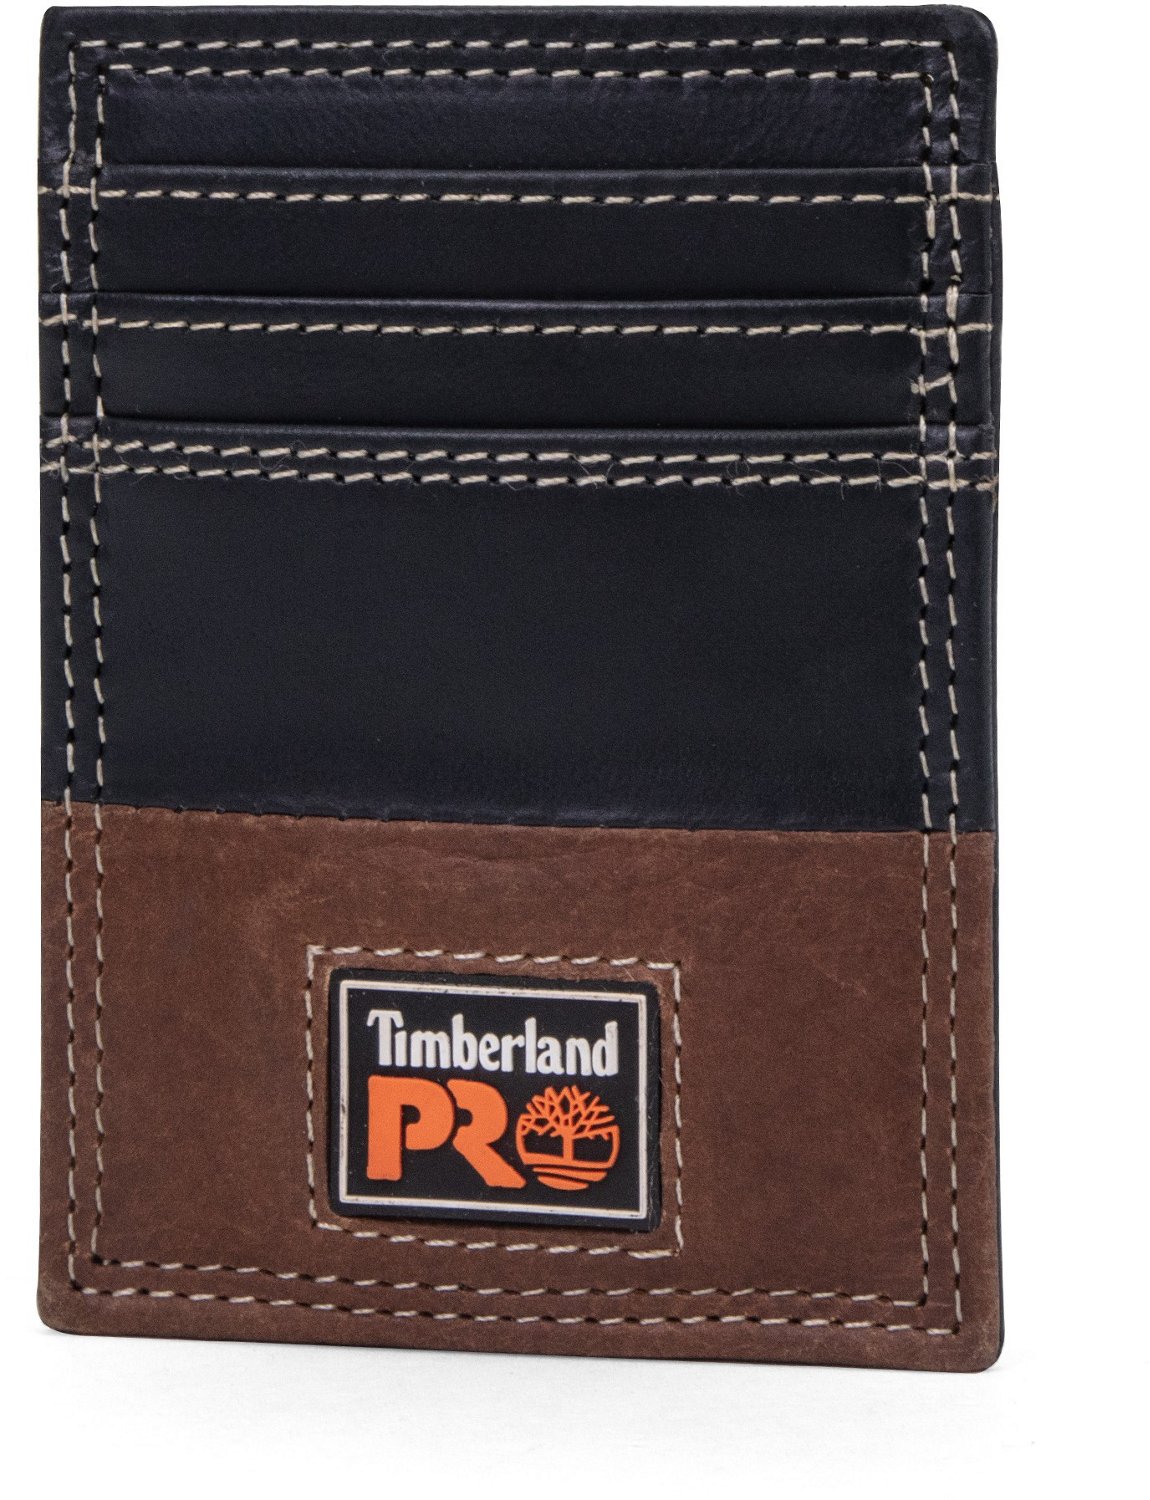 Timberland Pro Ellet Front Pocket Wallet